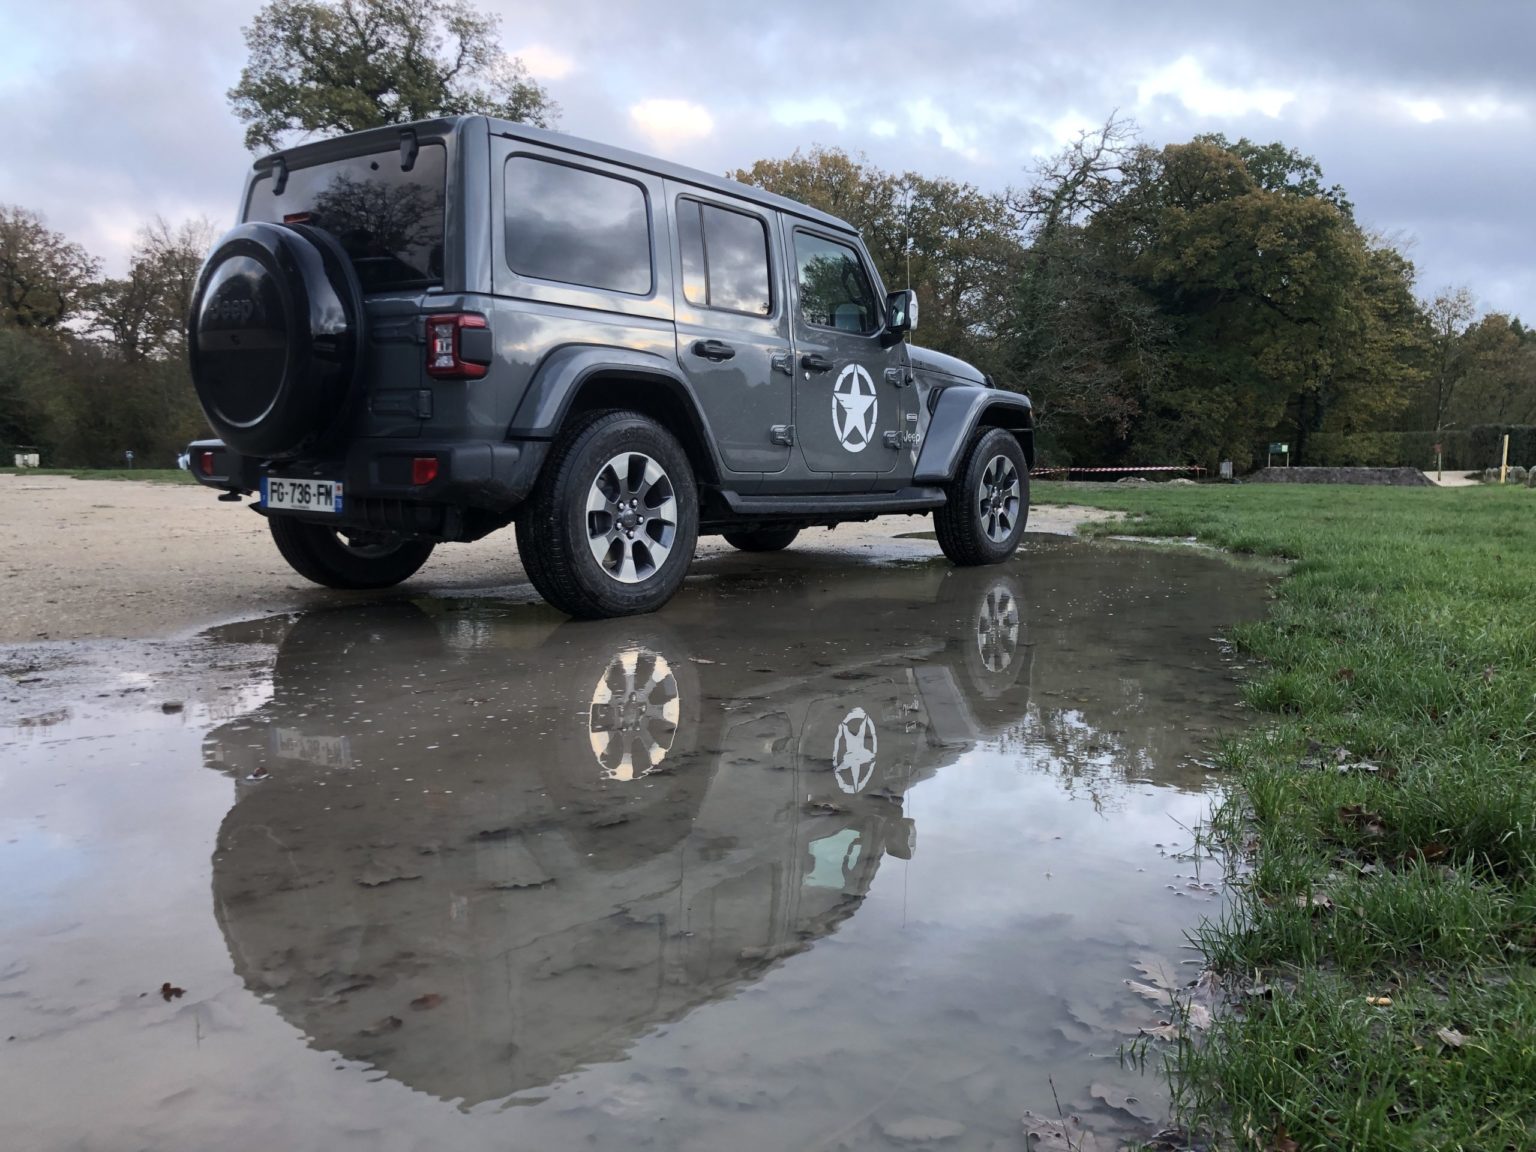 Jeep Wrangler 2019